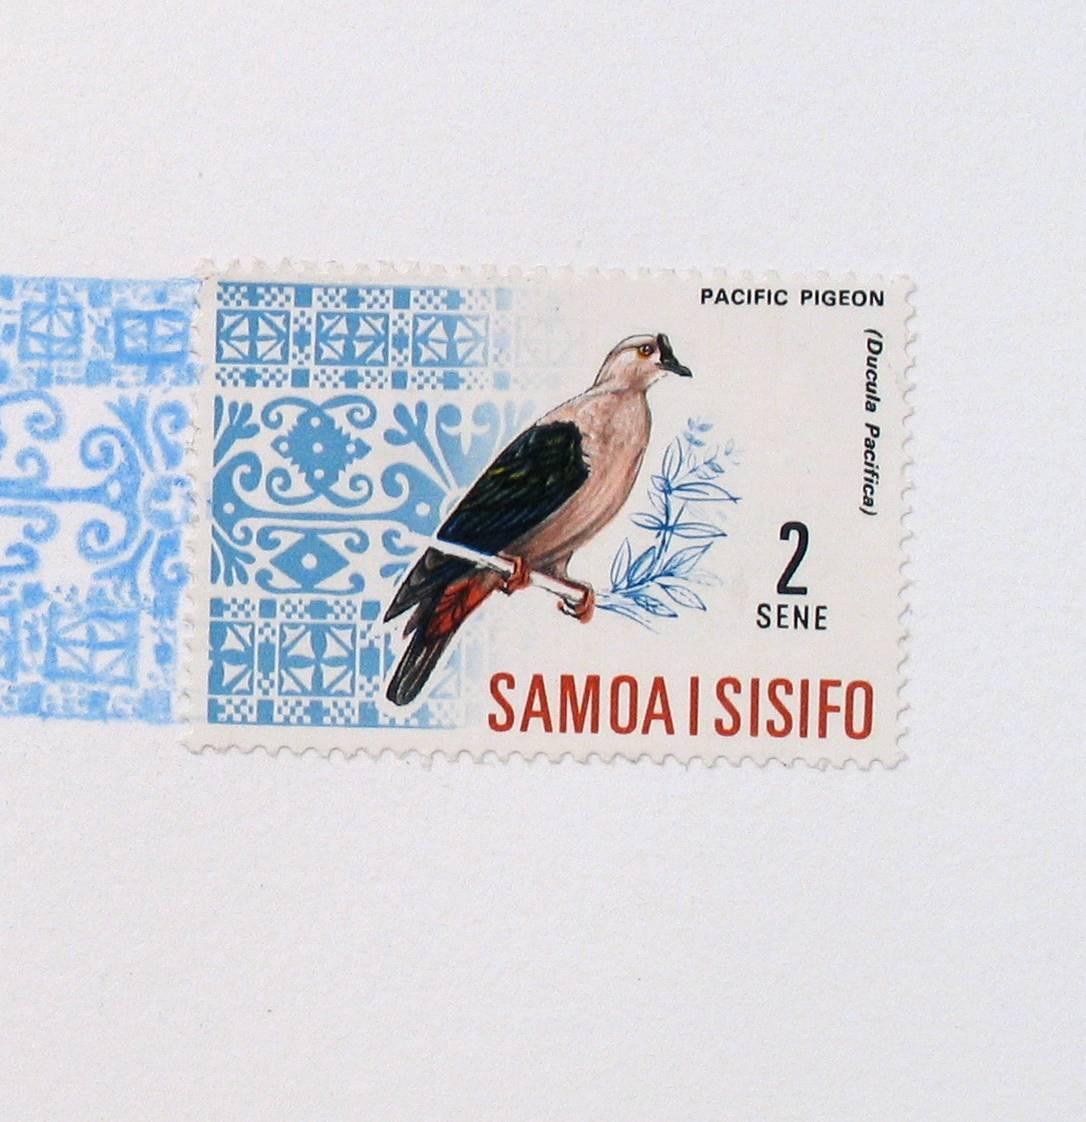 Samoa, motif d'avion bleu : (D'un dessin au crayon de couleur bleu ciel et d'un cachet d'oiseau) - Contemporain Art par Andrea Moreau